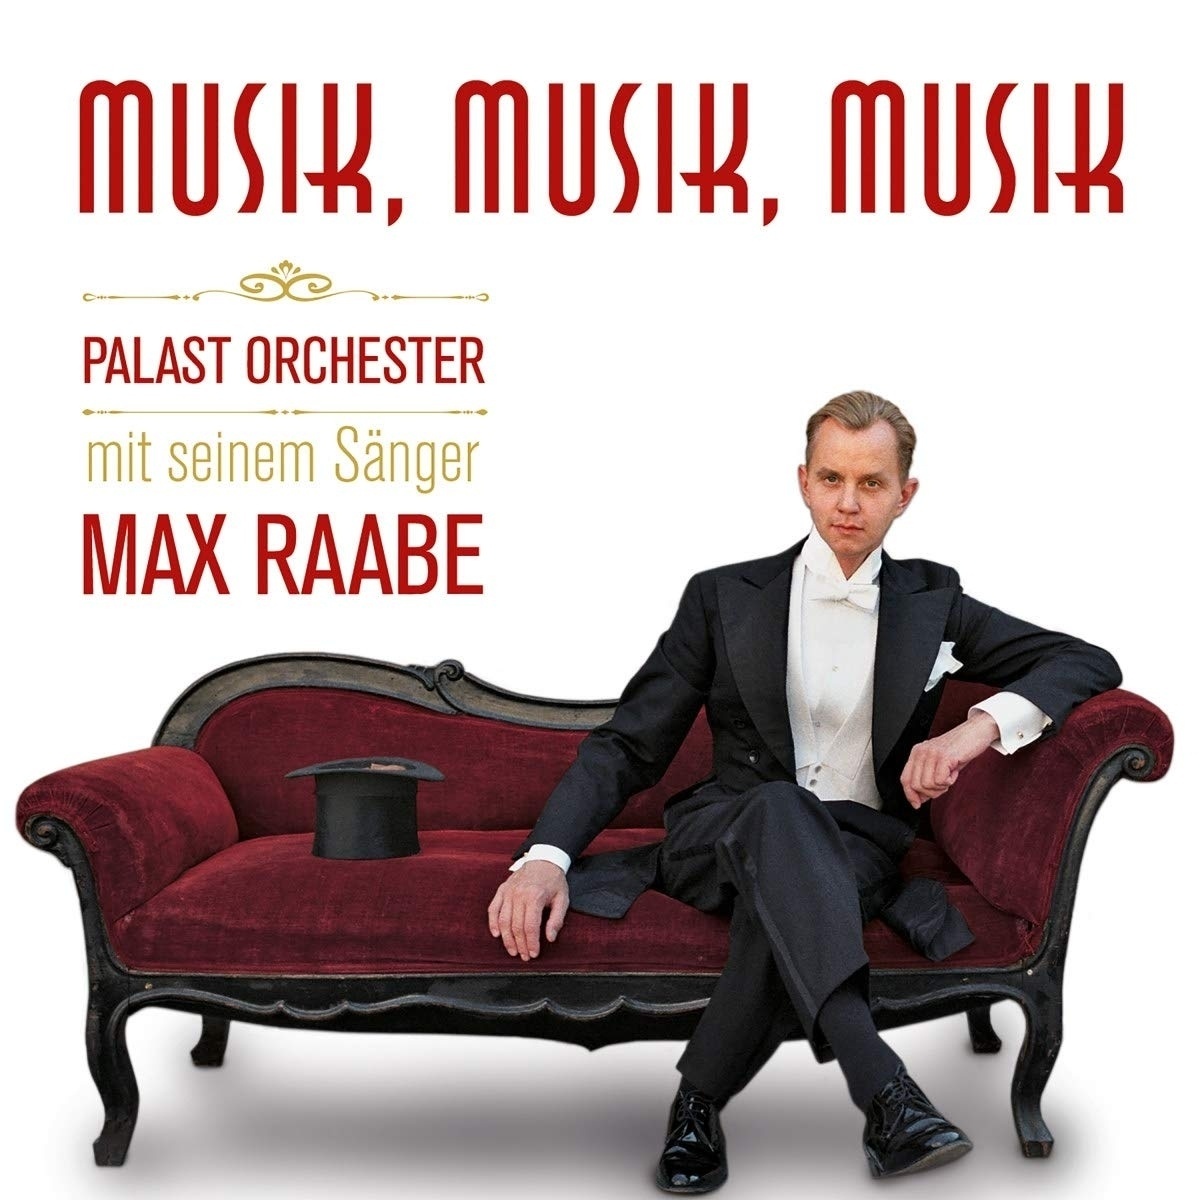 Musik Musik Musik - Max Raabe  Palast Orchester. (CD)